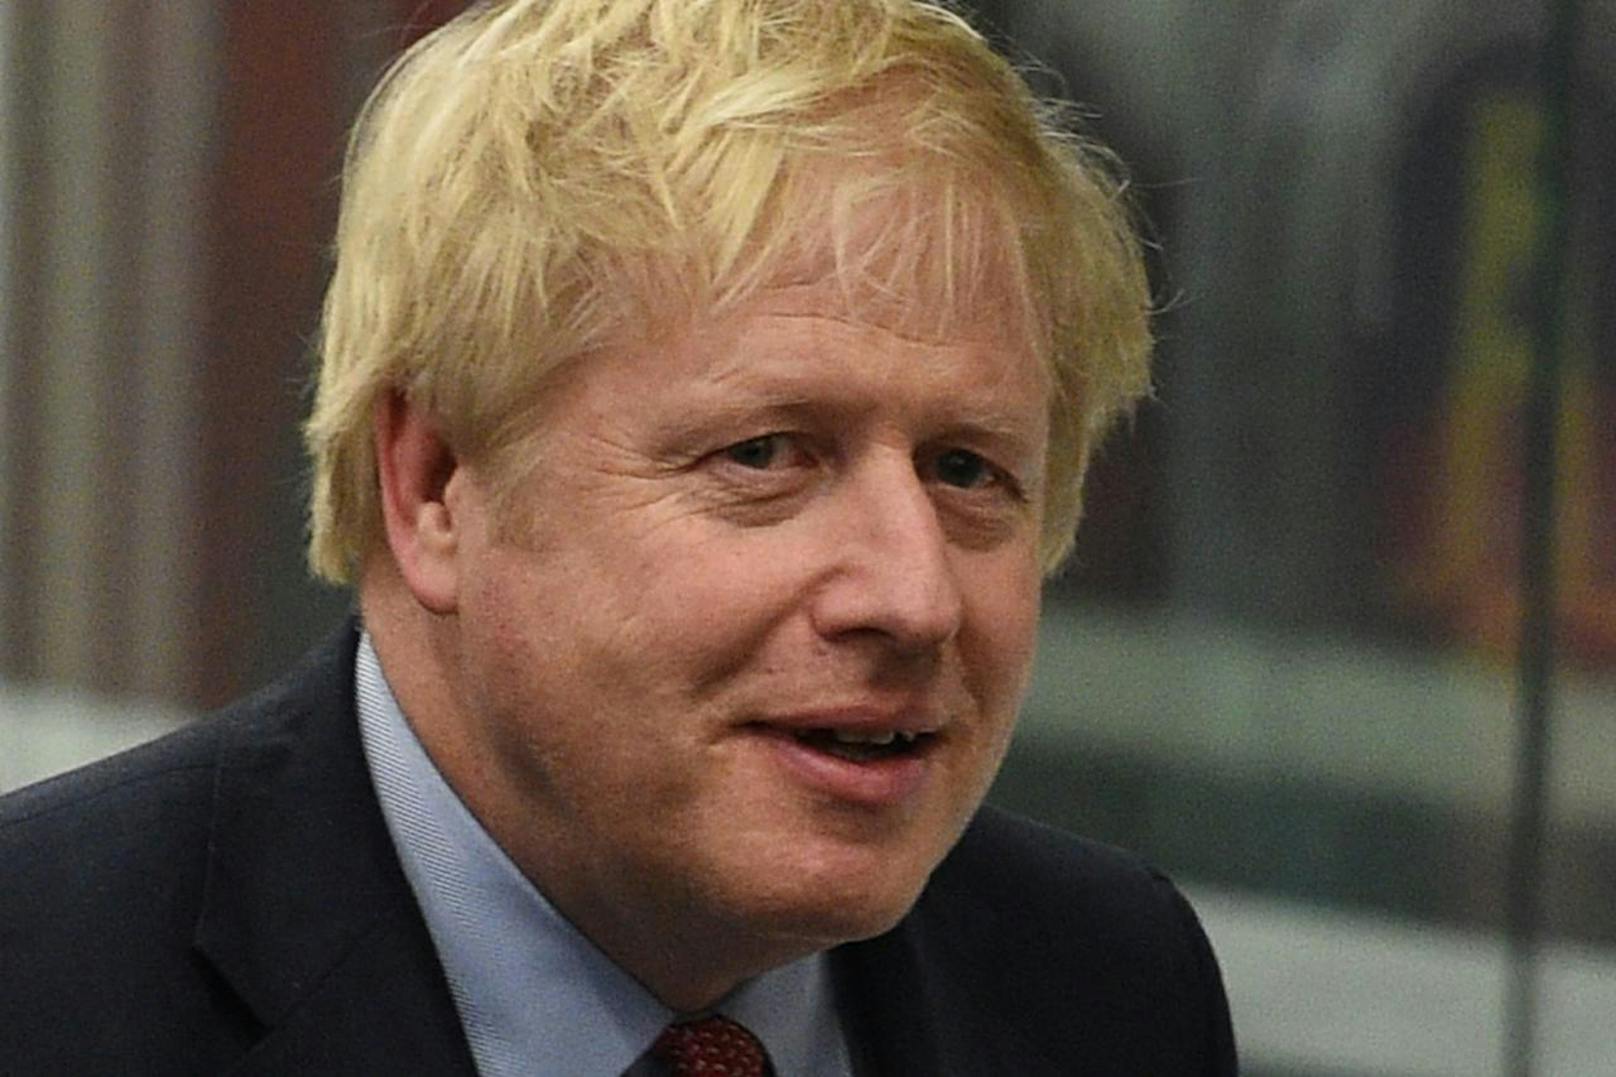 Für seinen Aktion zum Generieren von Spenden wurde Moore auch von Premier Boris Johnson, der ebenfalls Covid-19 hatte, gewürdigt.